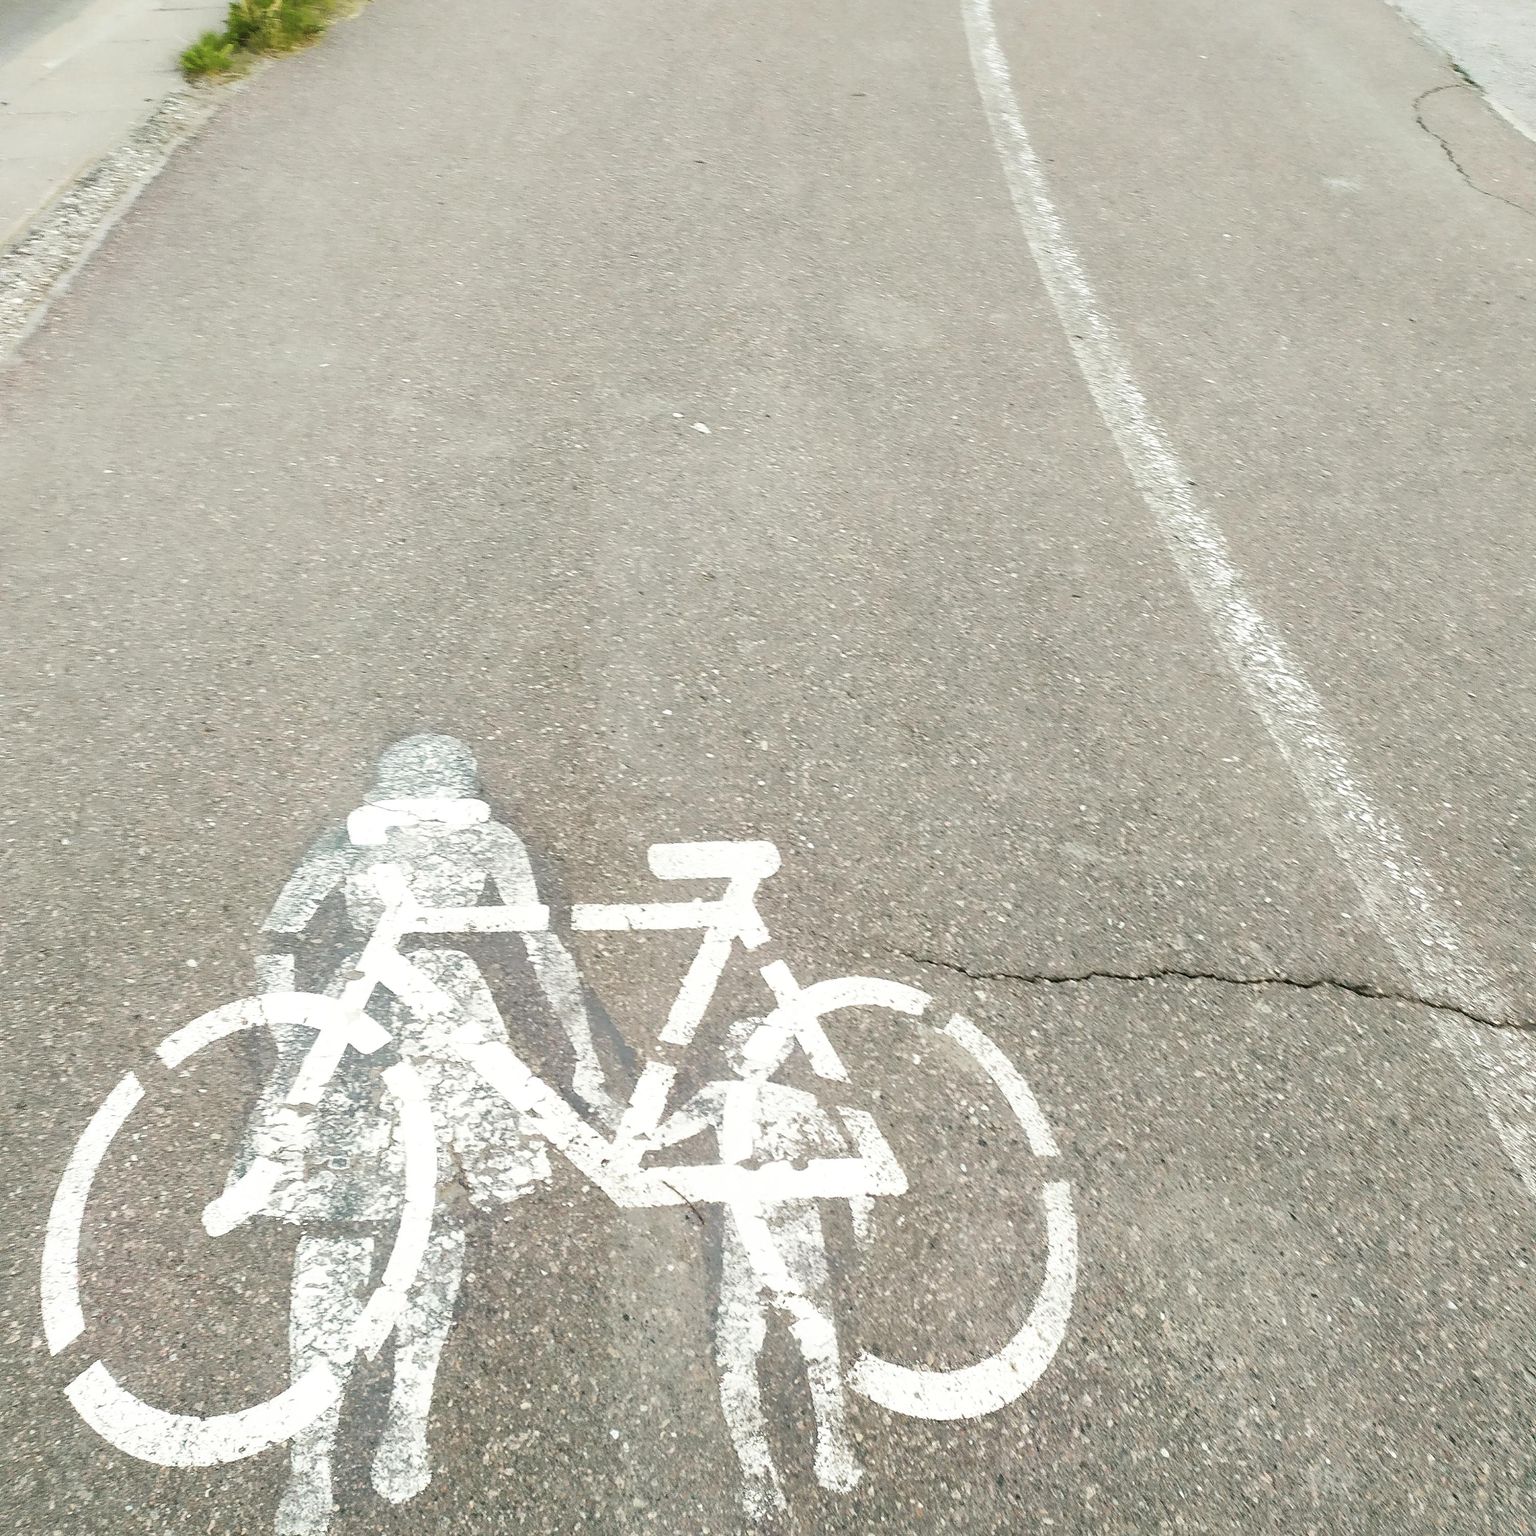 Pärnu soovib saada Euroopa Liidu programmist 12 miljonit eurot Raba–Laia sillaga seotud jalgrattateede võrgustiku rajamiseks.